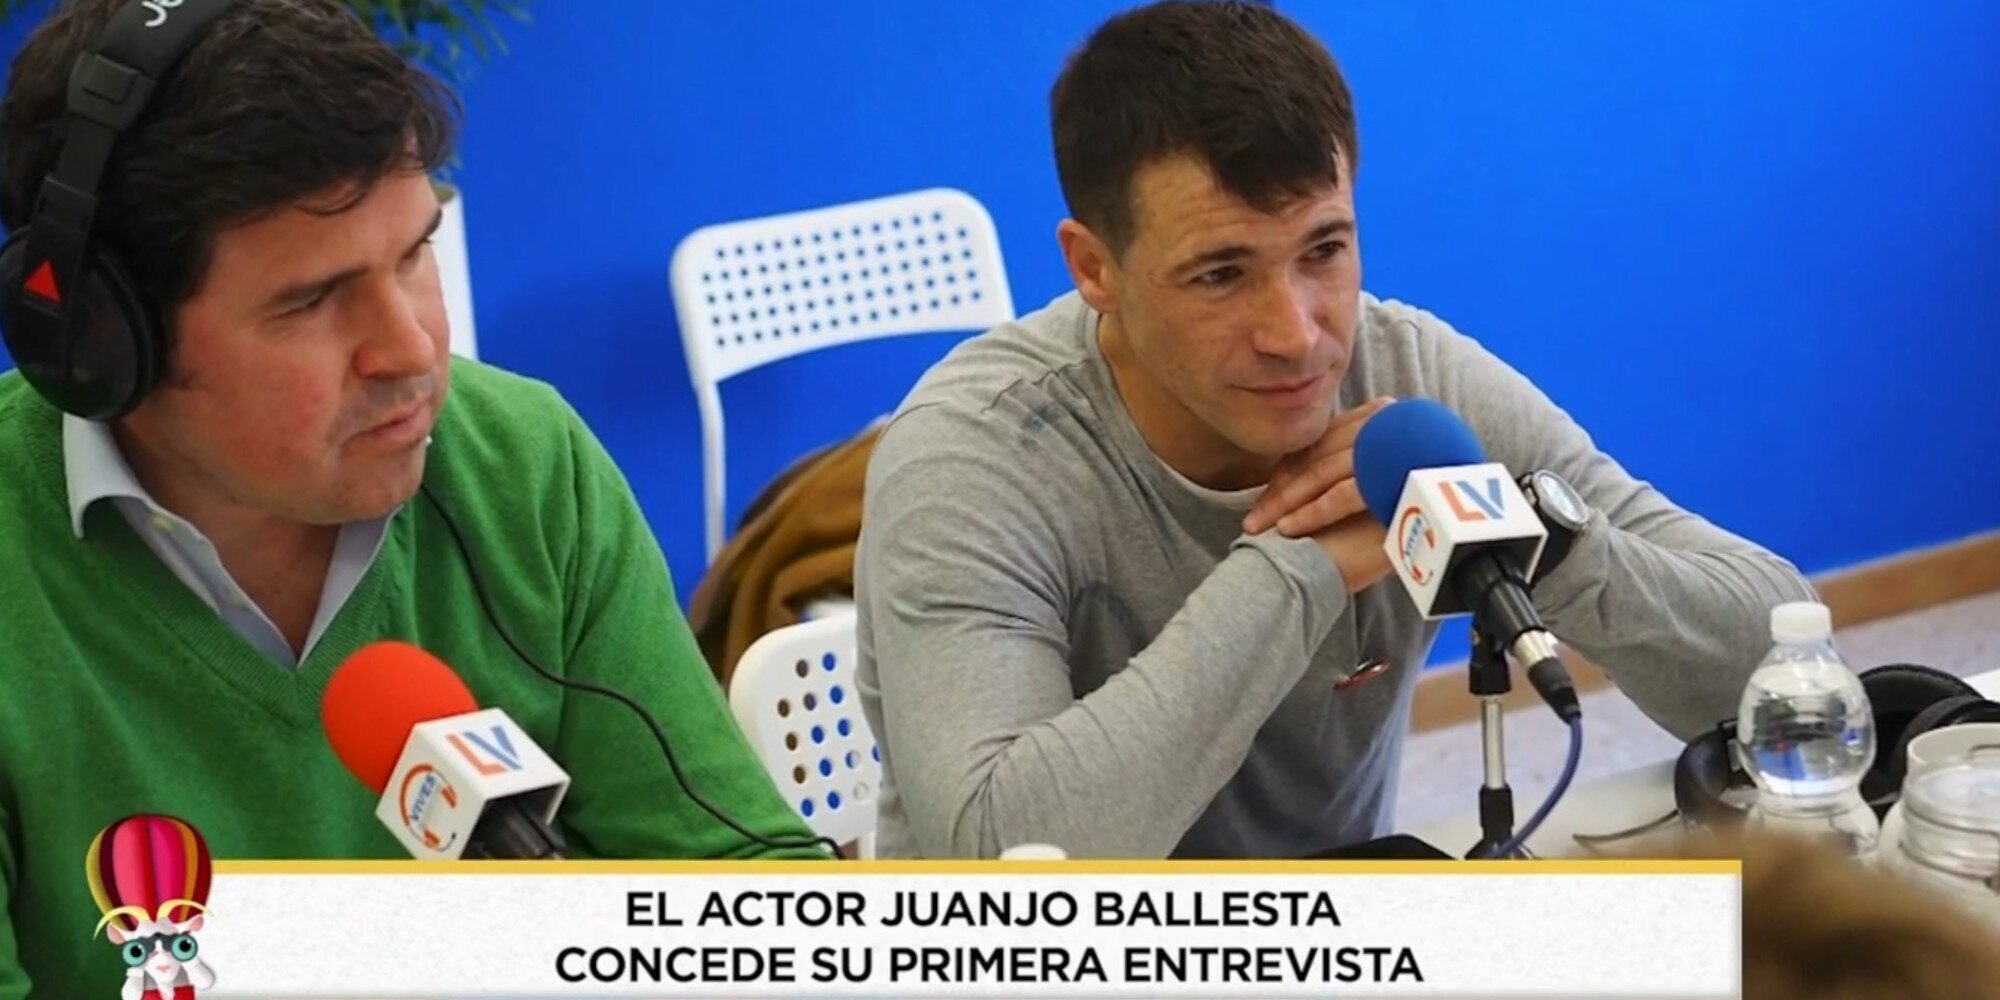 Juan José Ballesta reaparece y habla sobre cómo le ha afectado la fama: "Es un mundo muy peligroso"